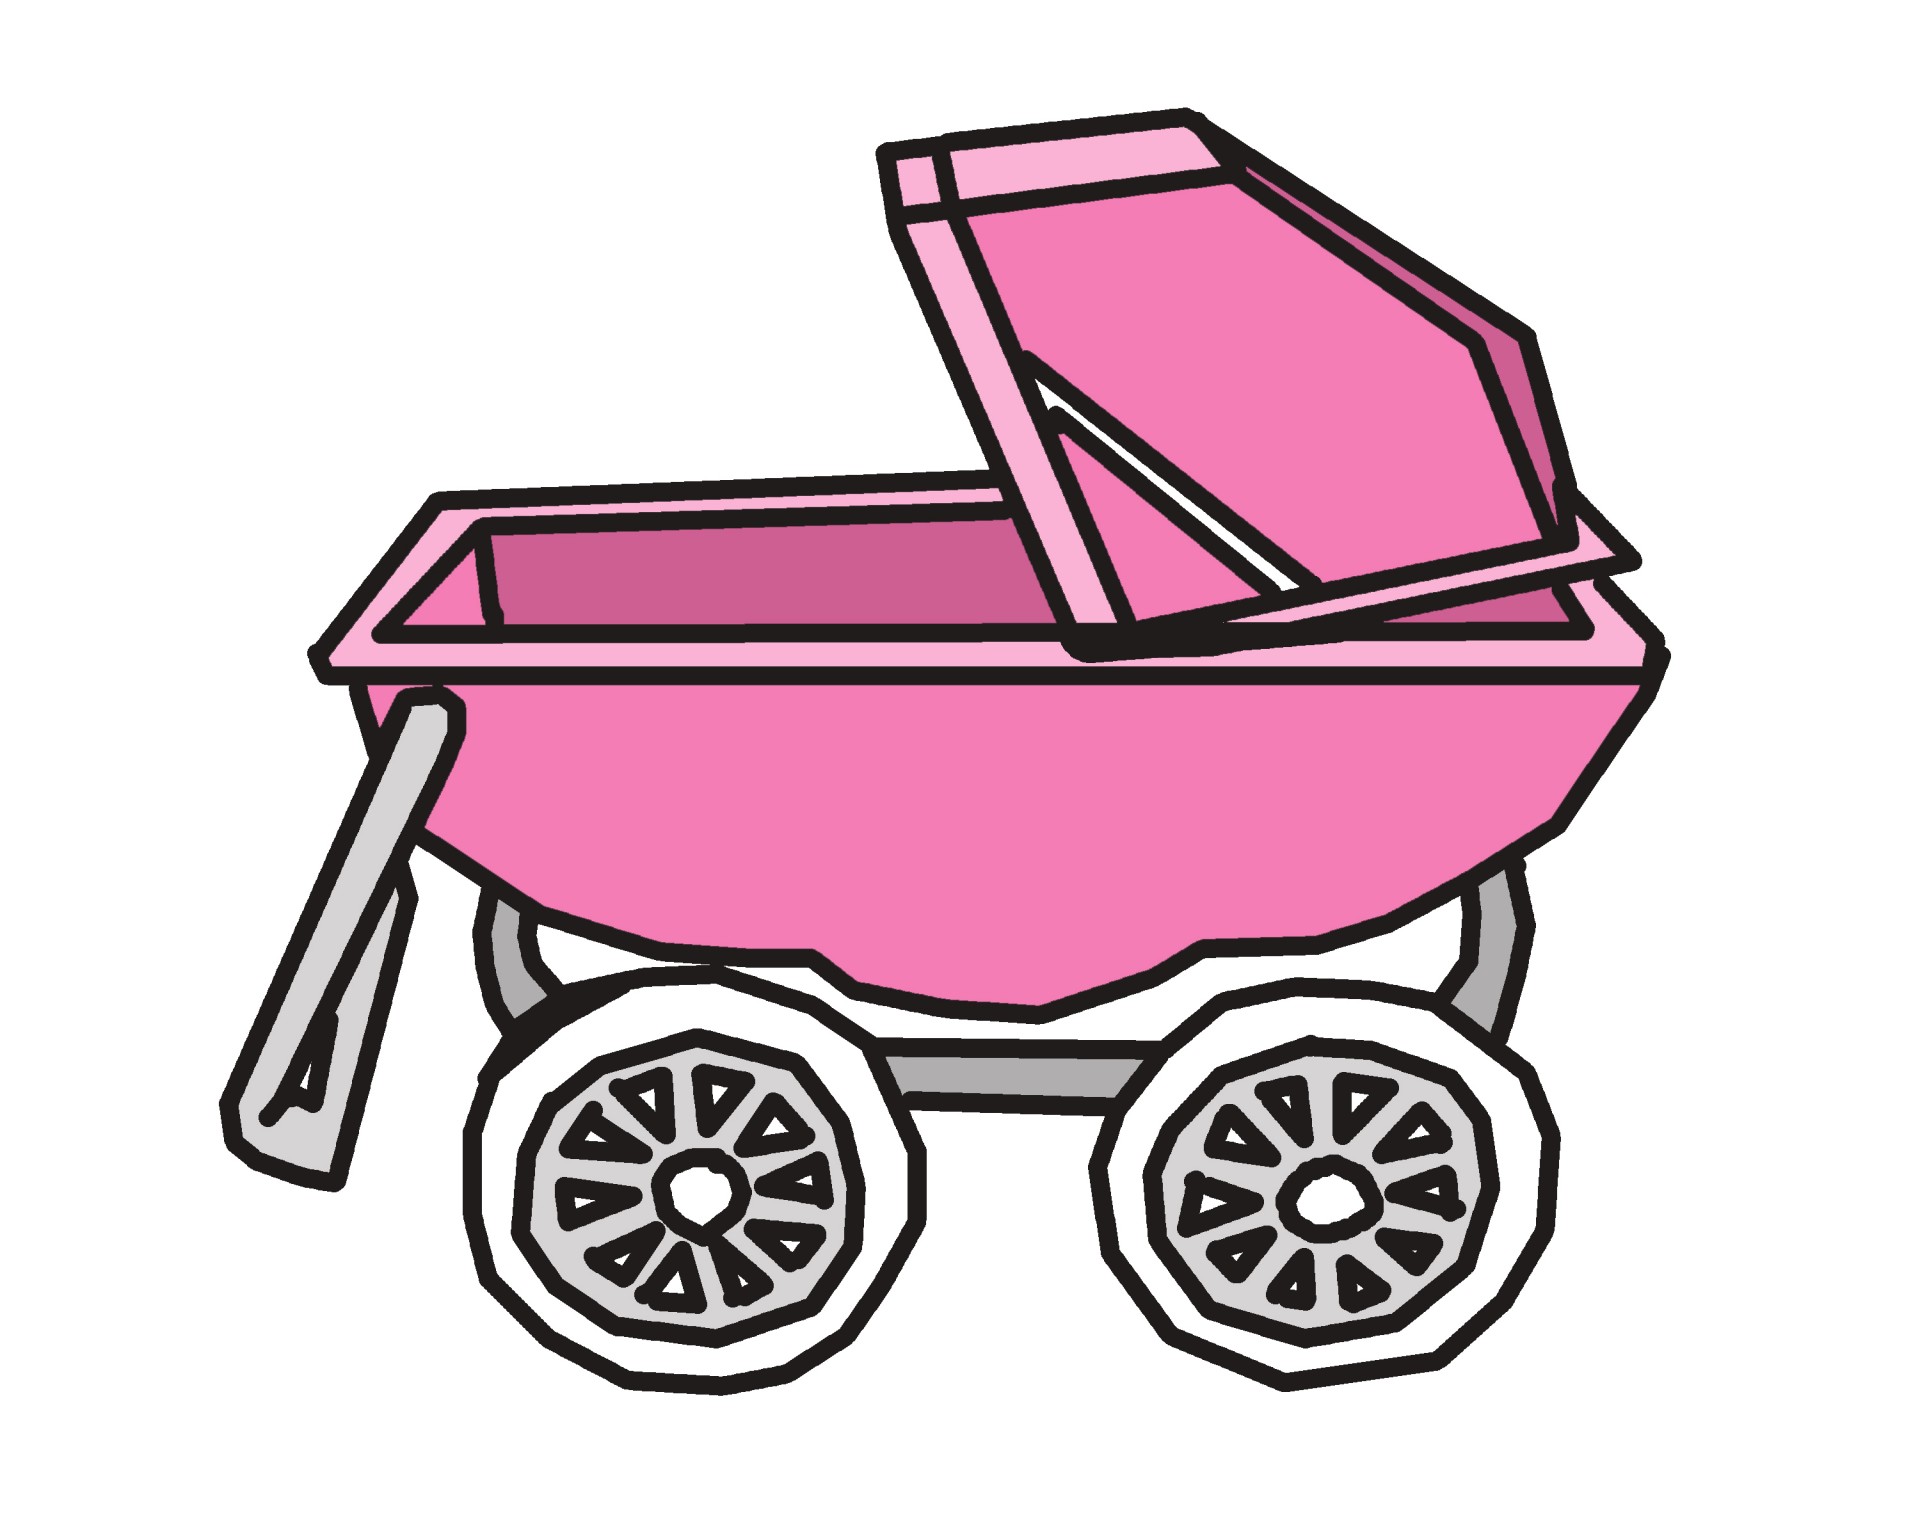 gambar stroller bayi